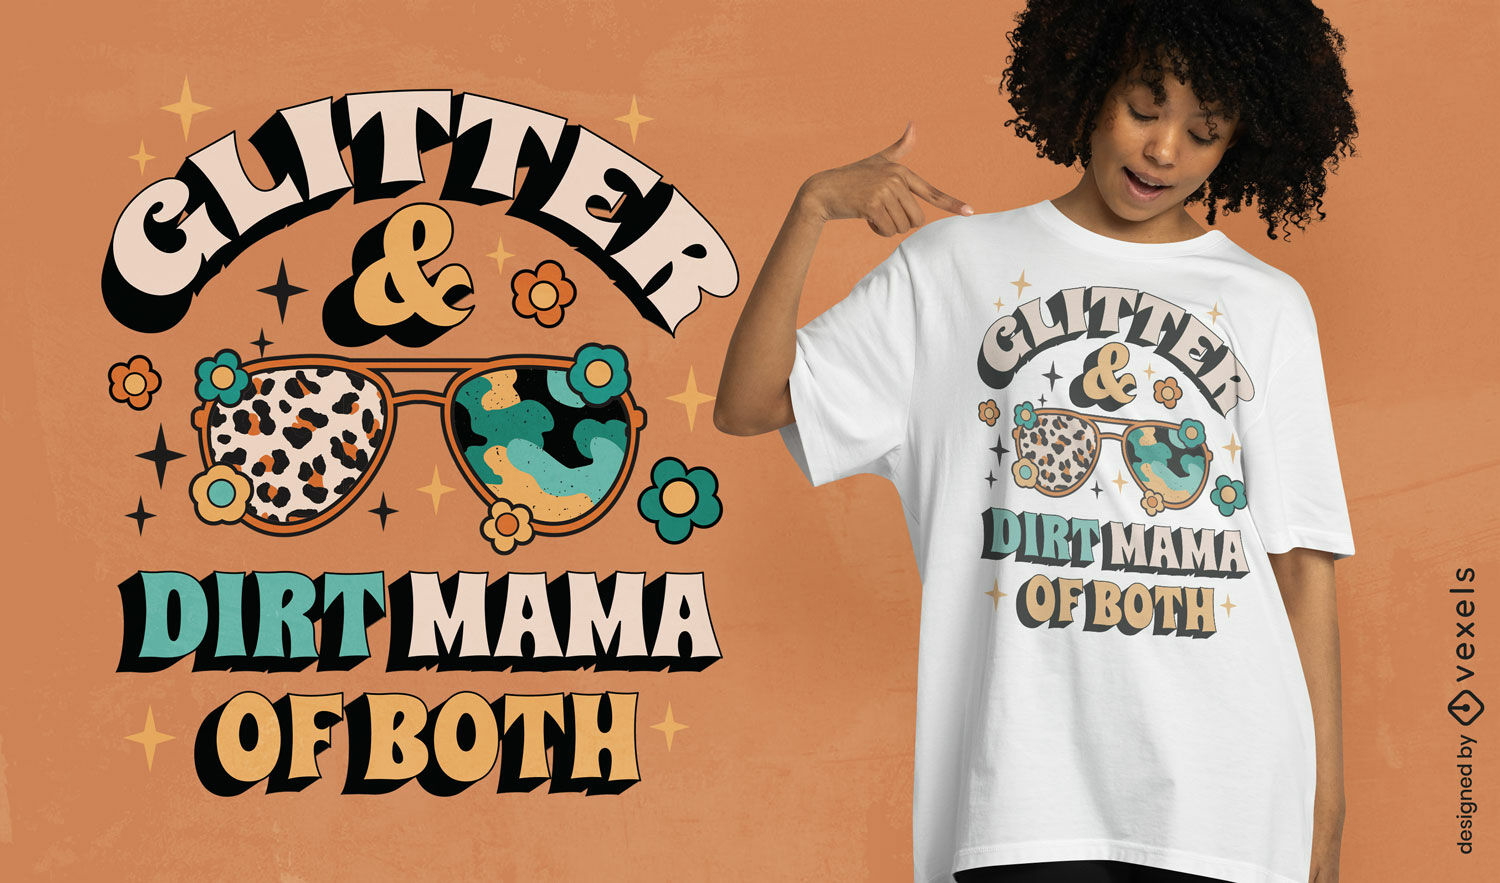 Glitter e sujeira mam?e em ambos os designs de camisetas